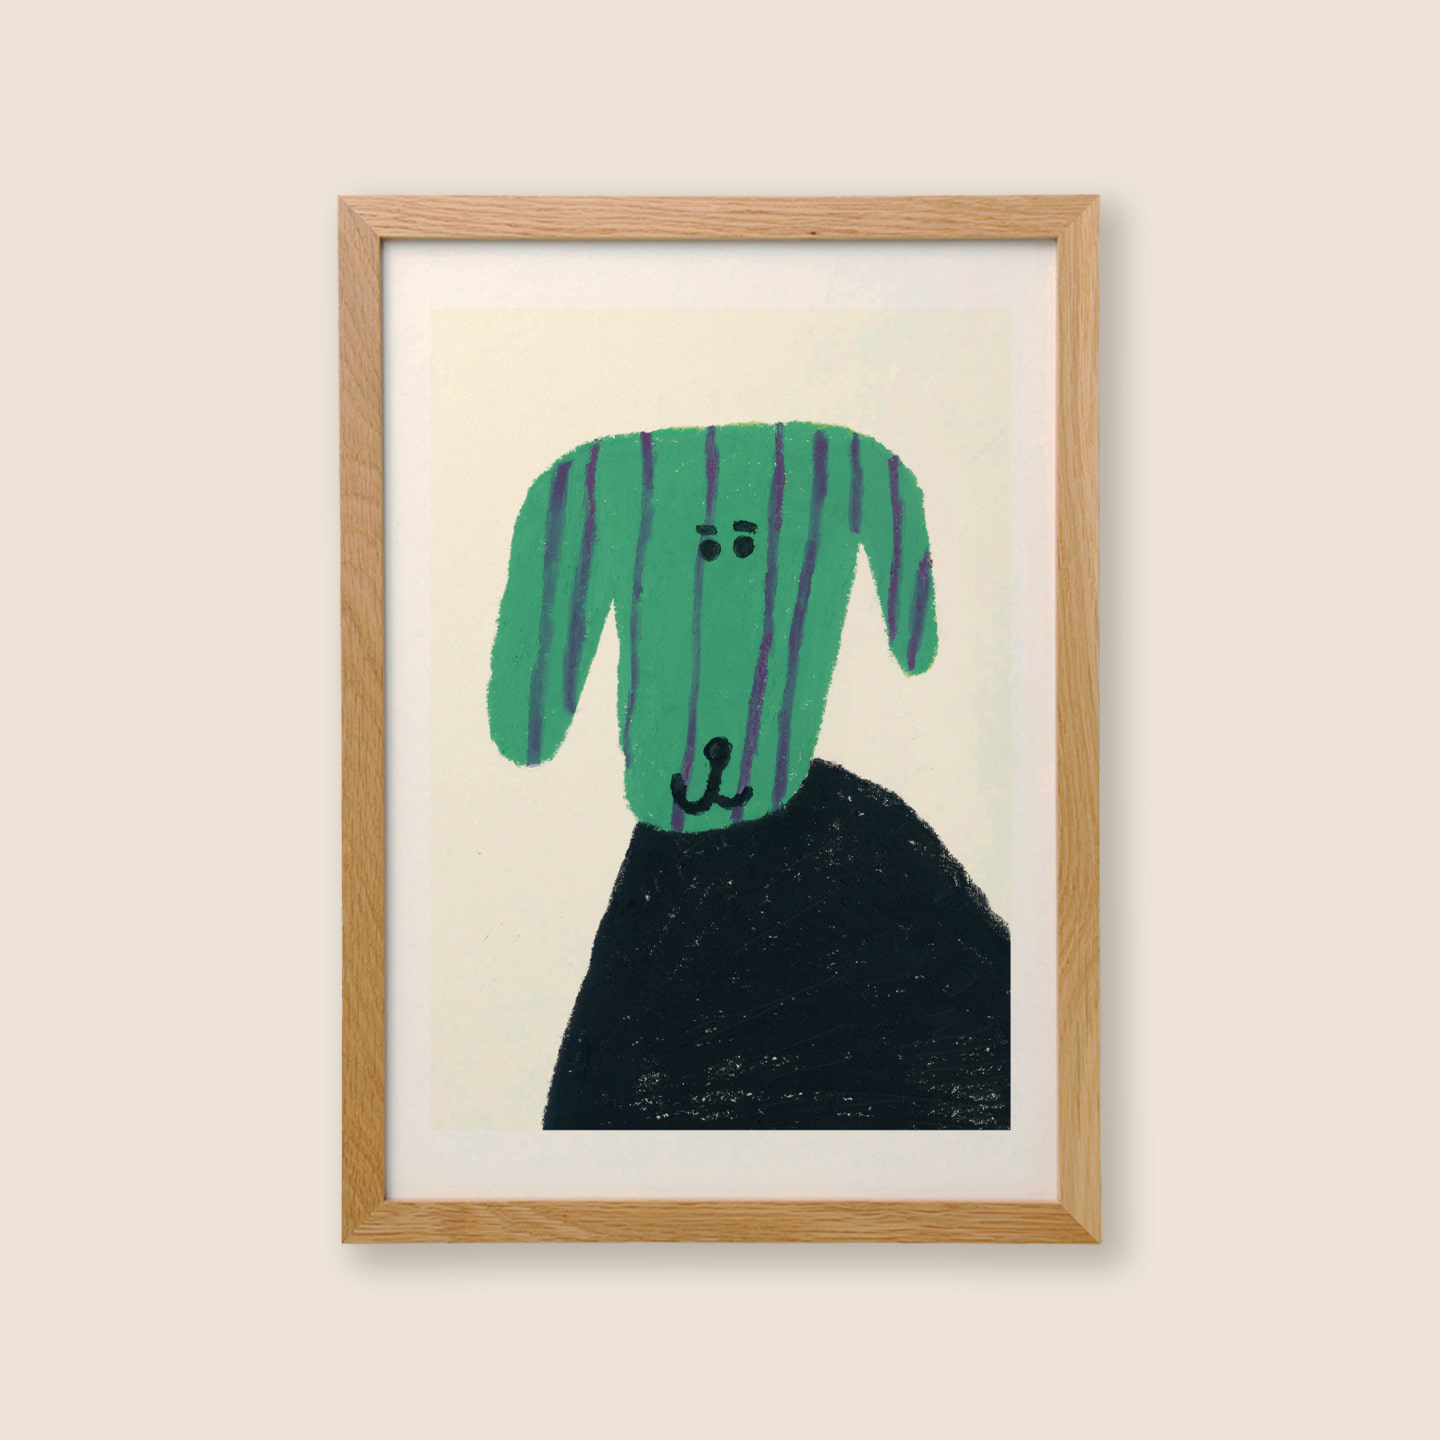 A Green Dog